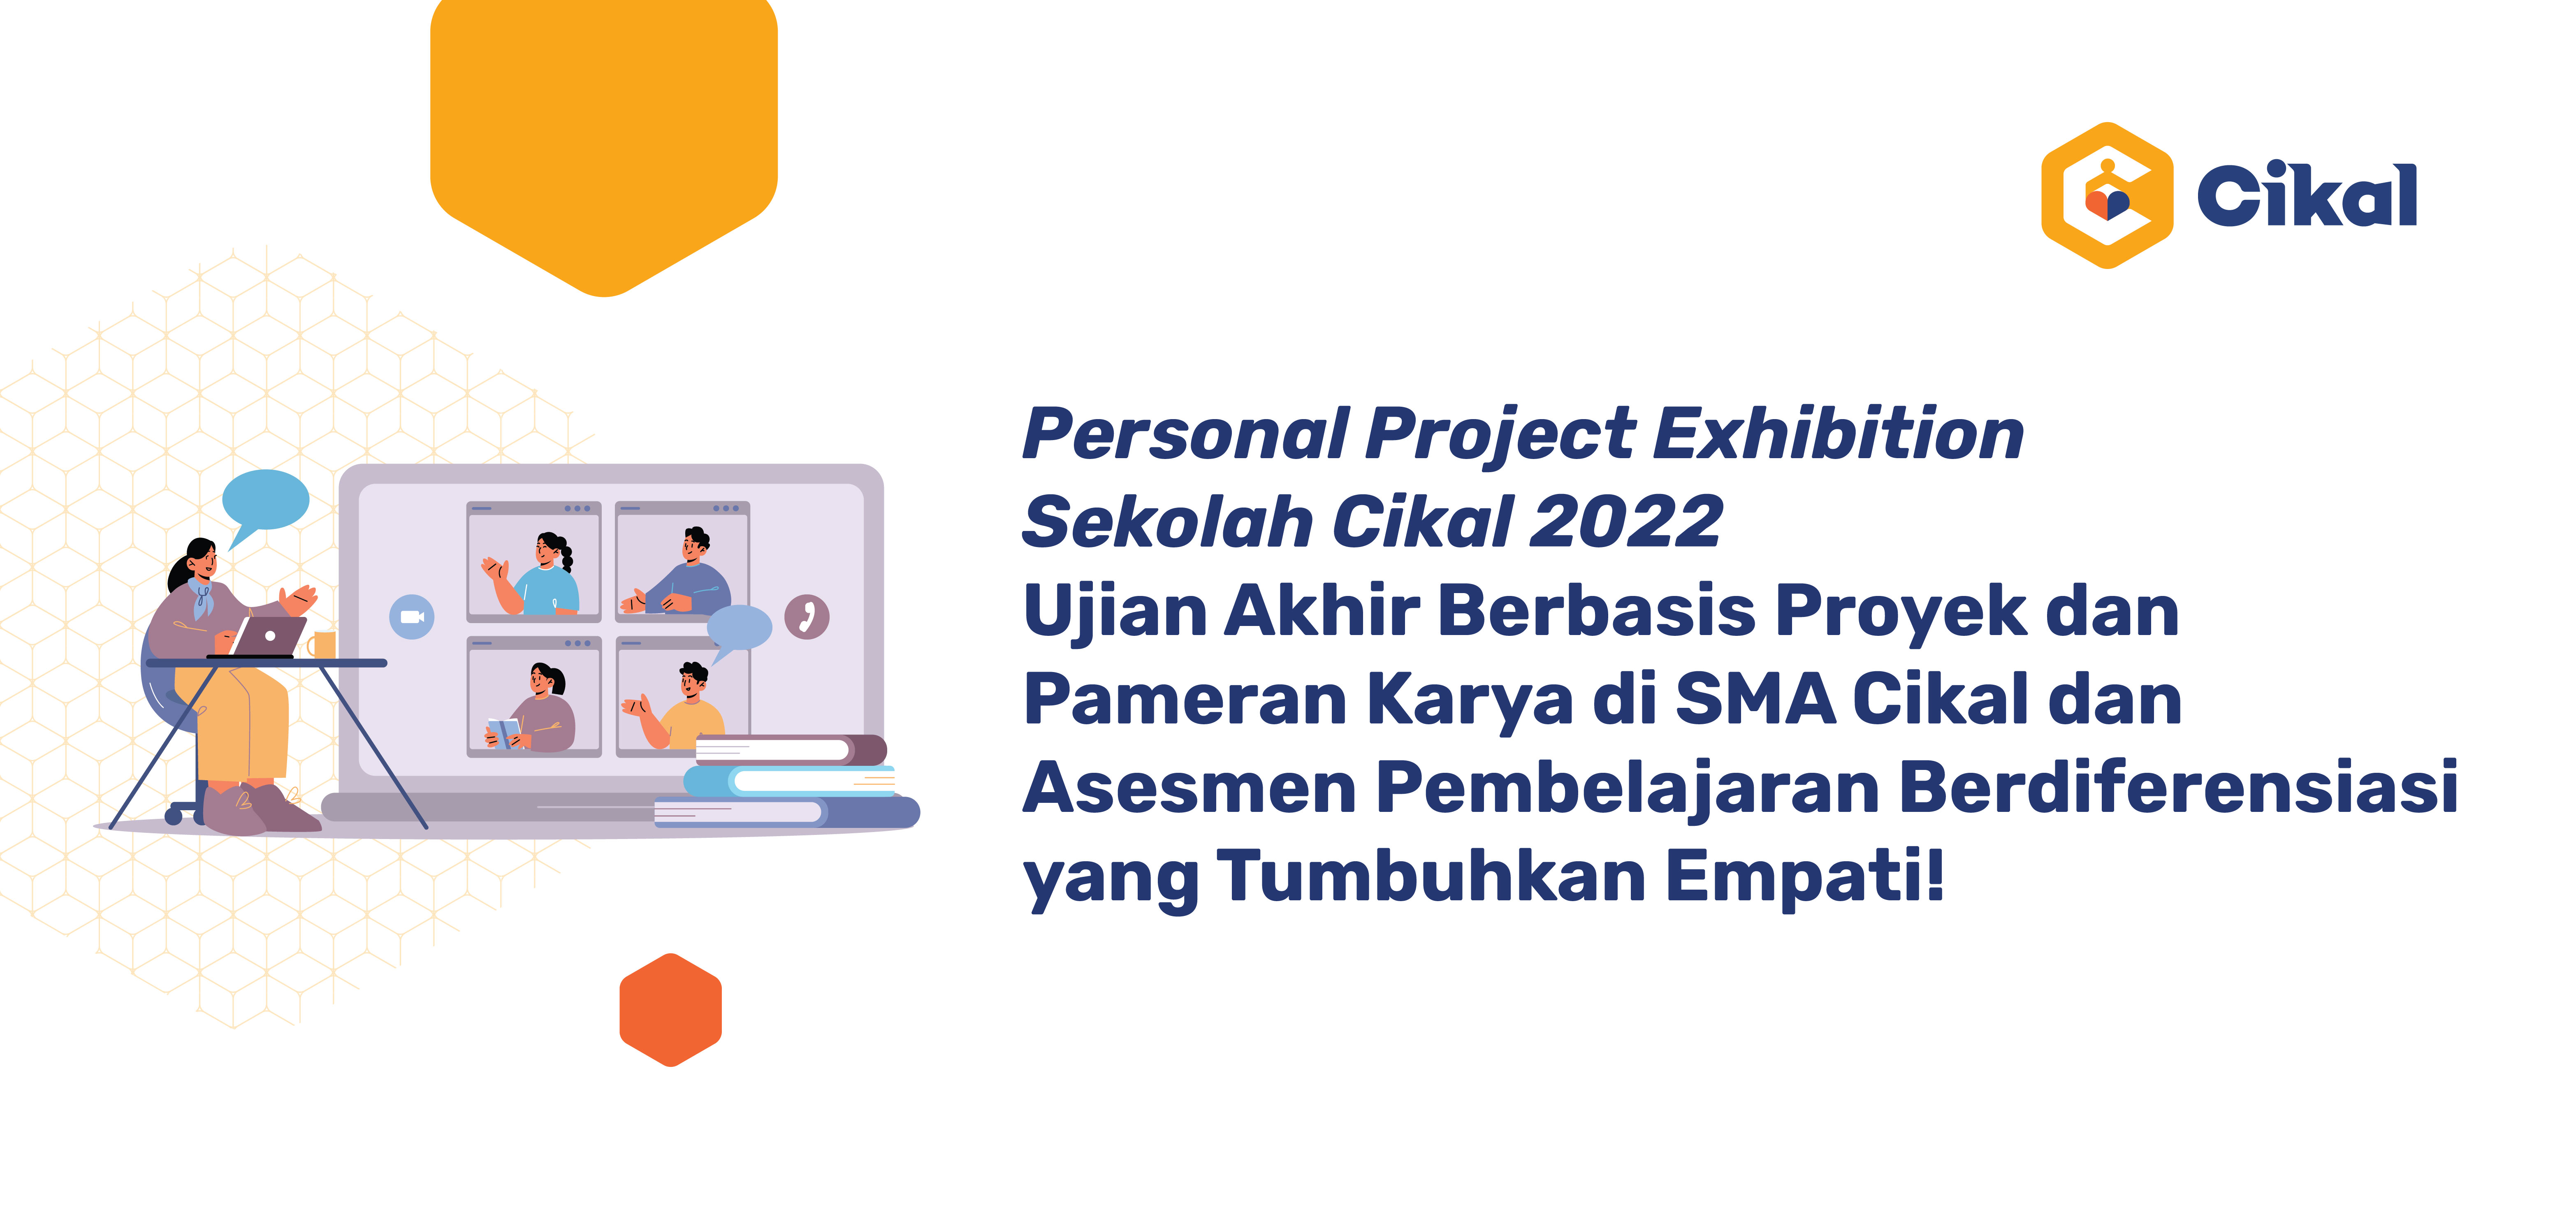 Personal Project Exhibition 2022 Ujian Akhir Berbasis Proyek dan Pameran Karya di SMA Cikal dan Asesmen Pembelajaran Berdiferensiasi yang Tumbuhkan Empati!